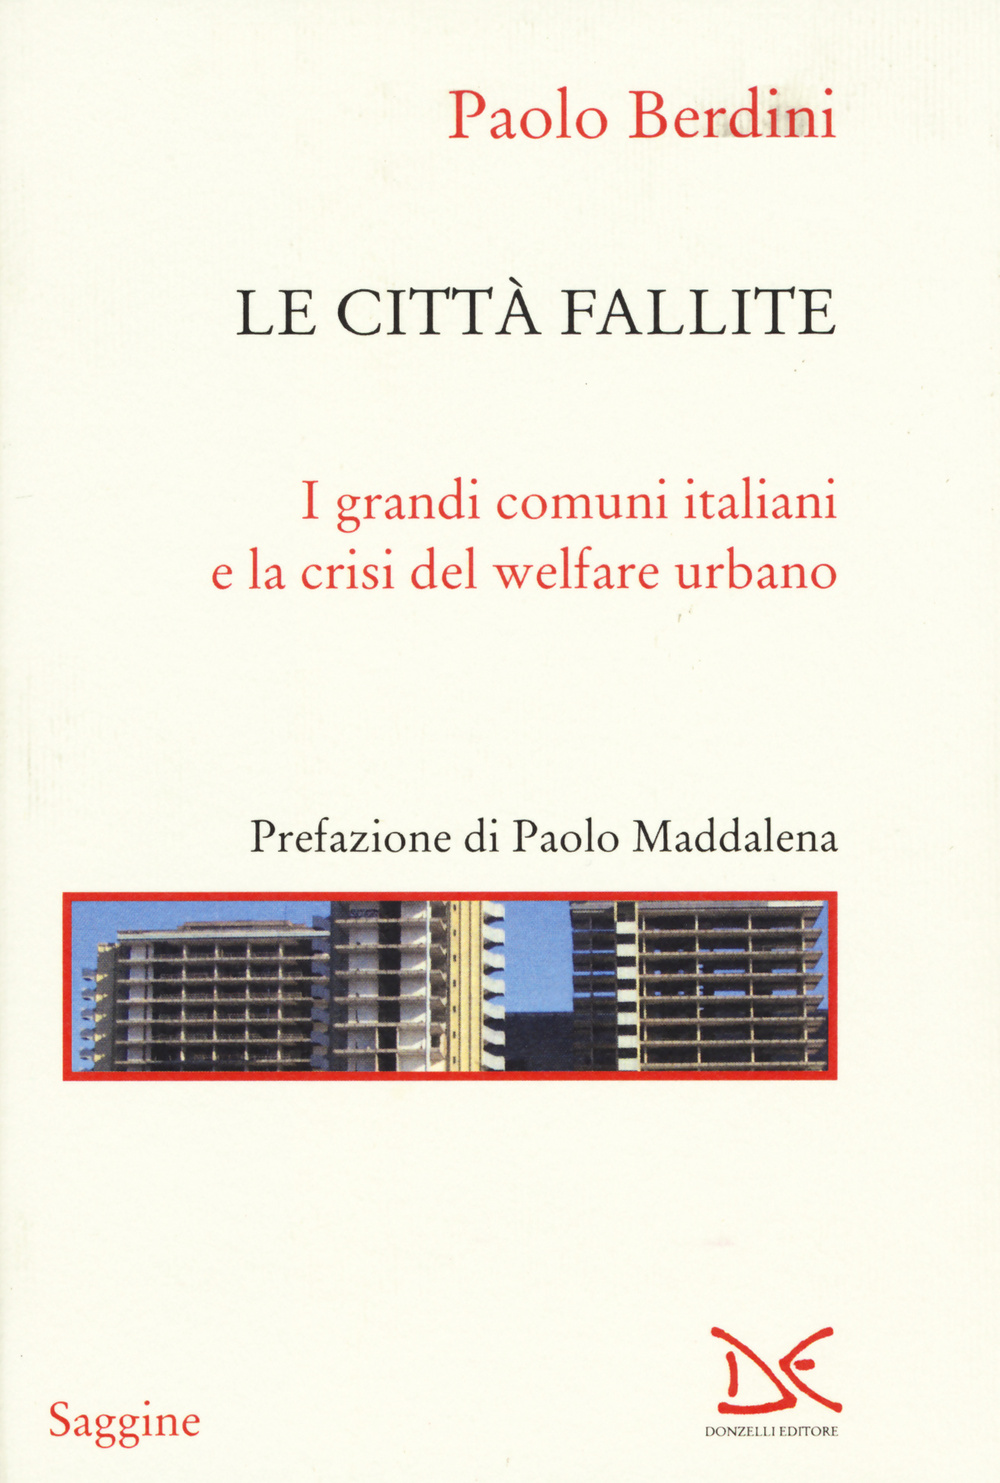 Le città fallite. I grandi comuni italiani e la crisi del welfare urbano